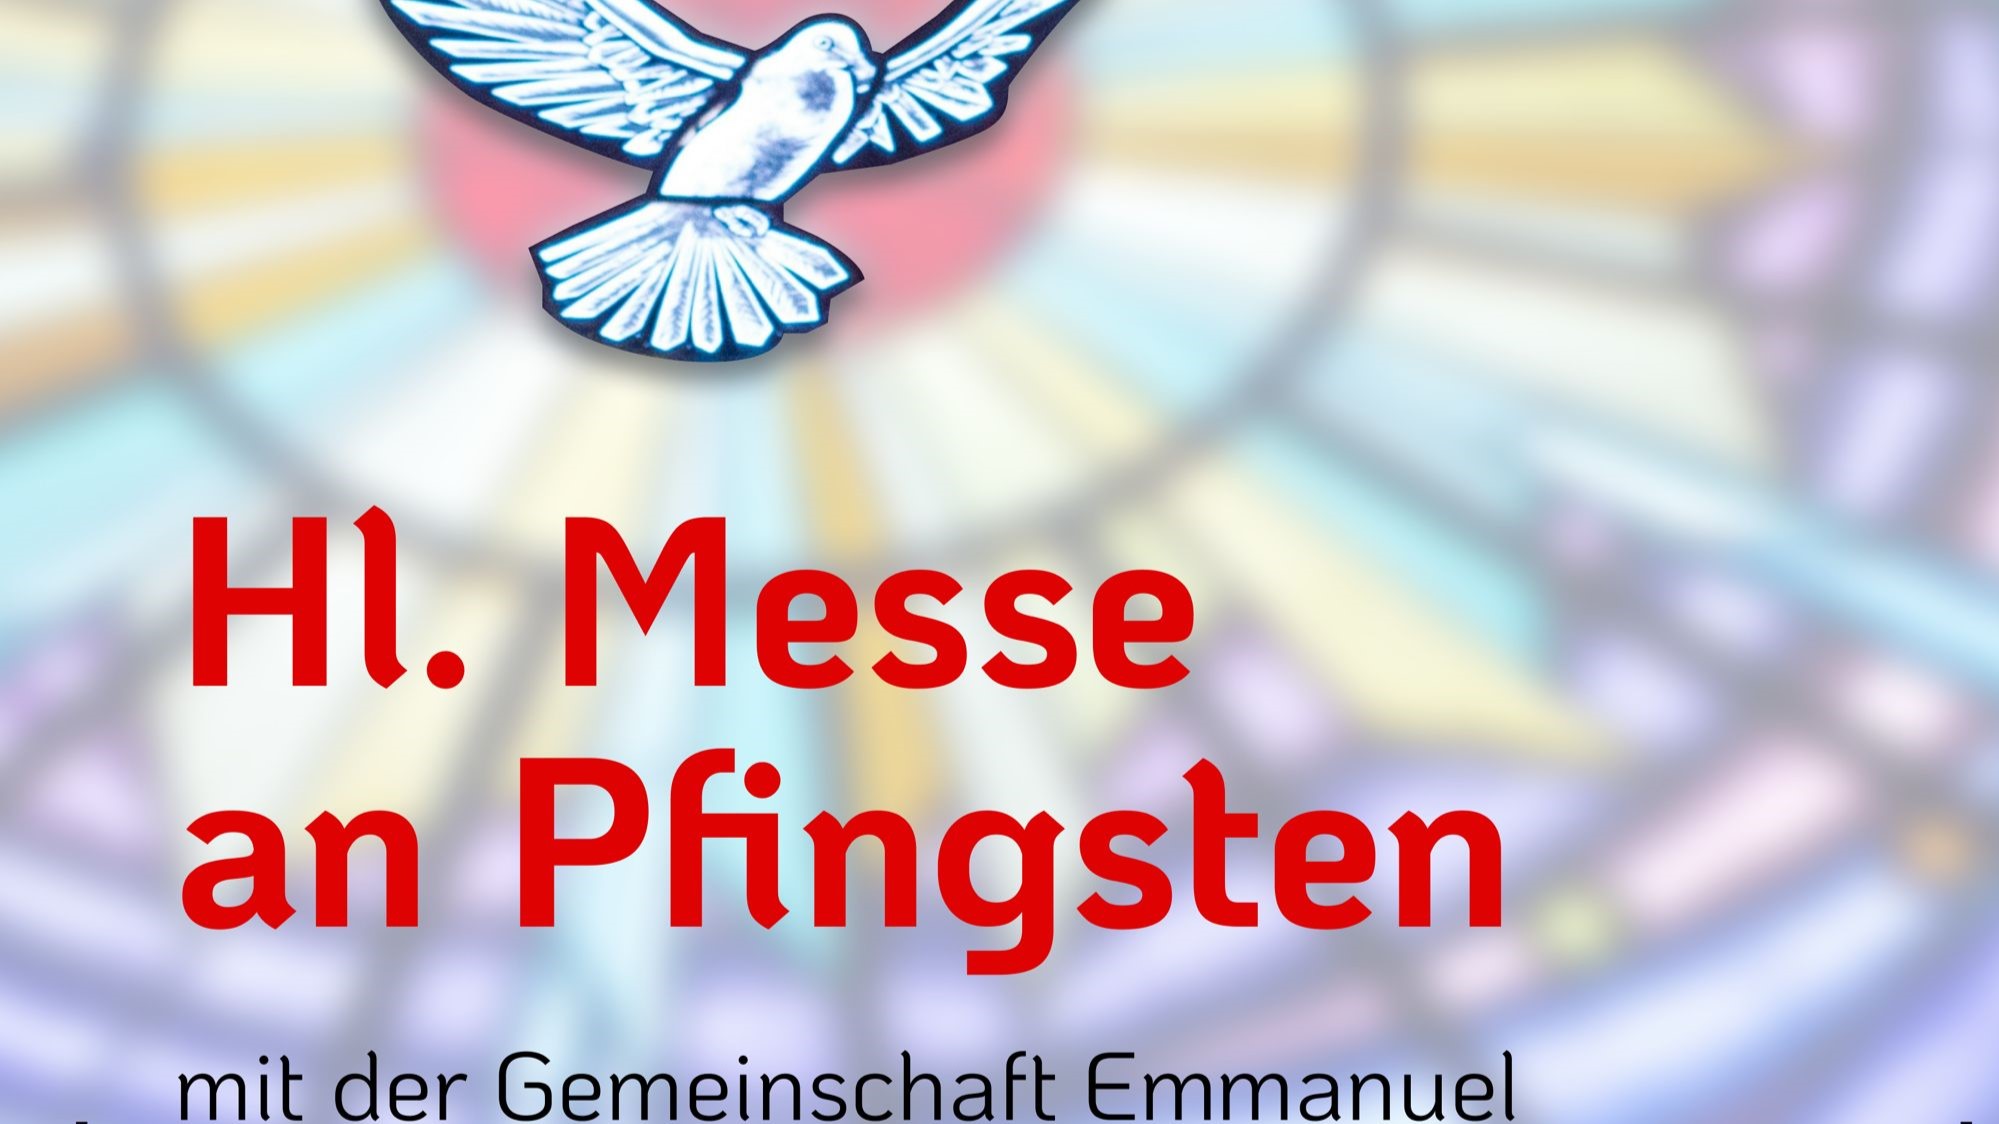 Hl. Messe an Pfingsten mit der Gemeinschaft Emmanuel